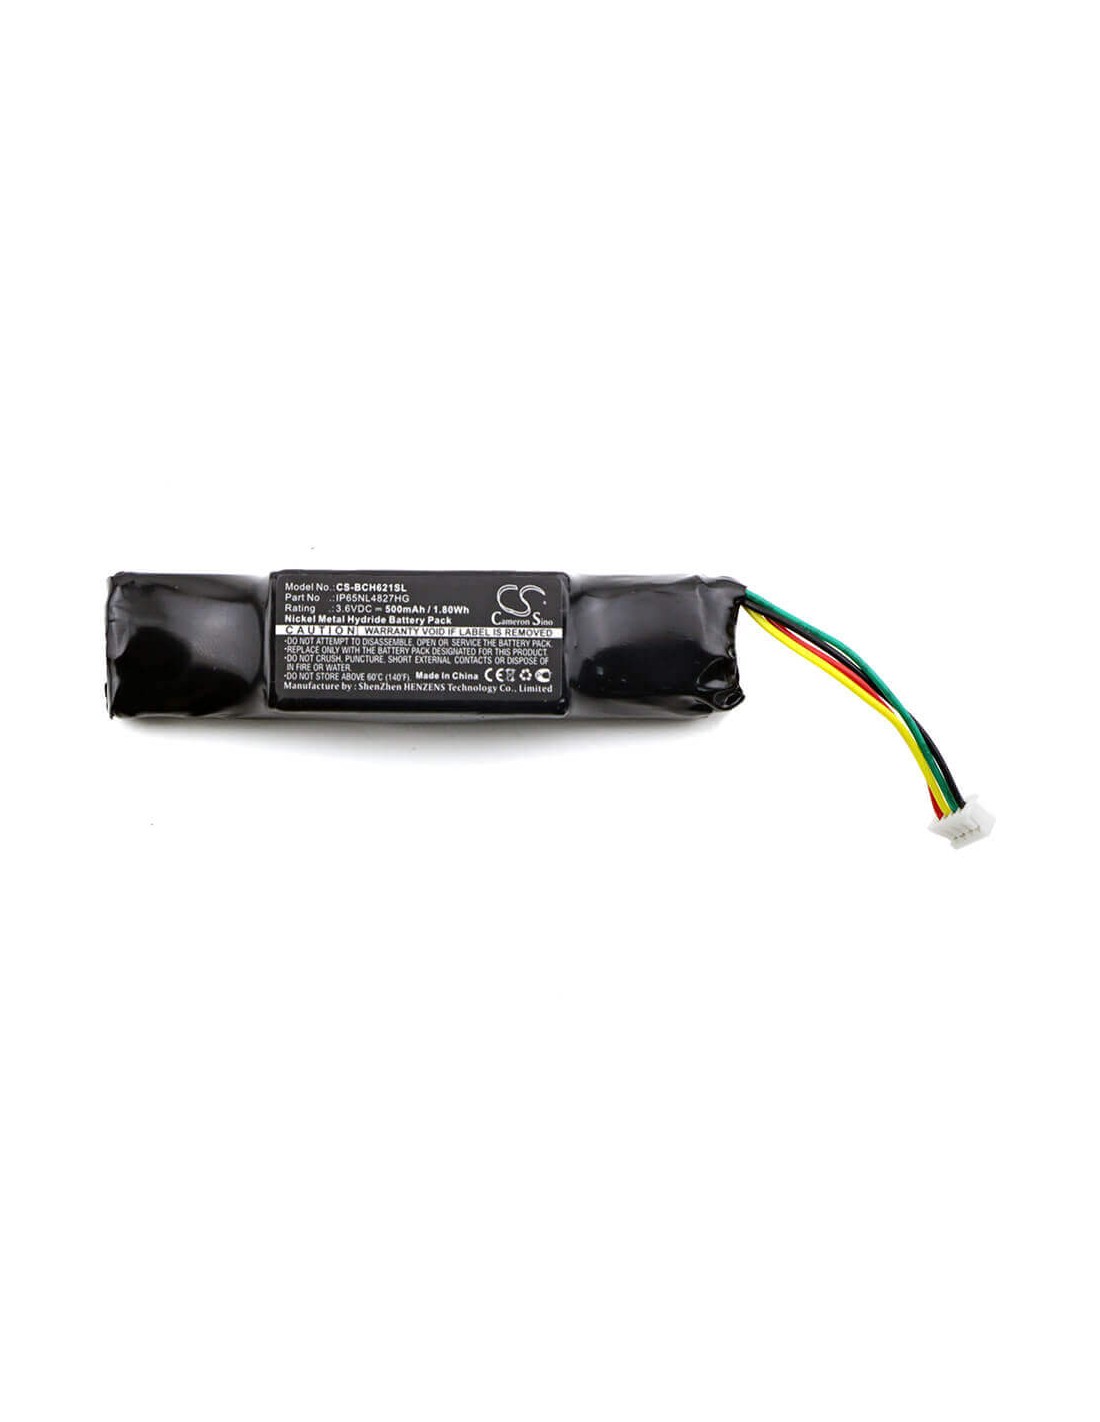 Battery for Bosch, Lbb 6213/01, Lbb 6214/23c, Lbb 6262/00 3.6V, 500mAh - 1.80Wh